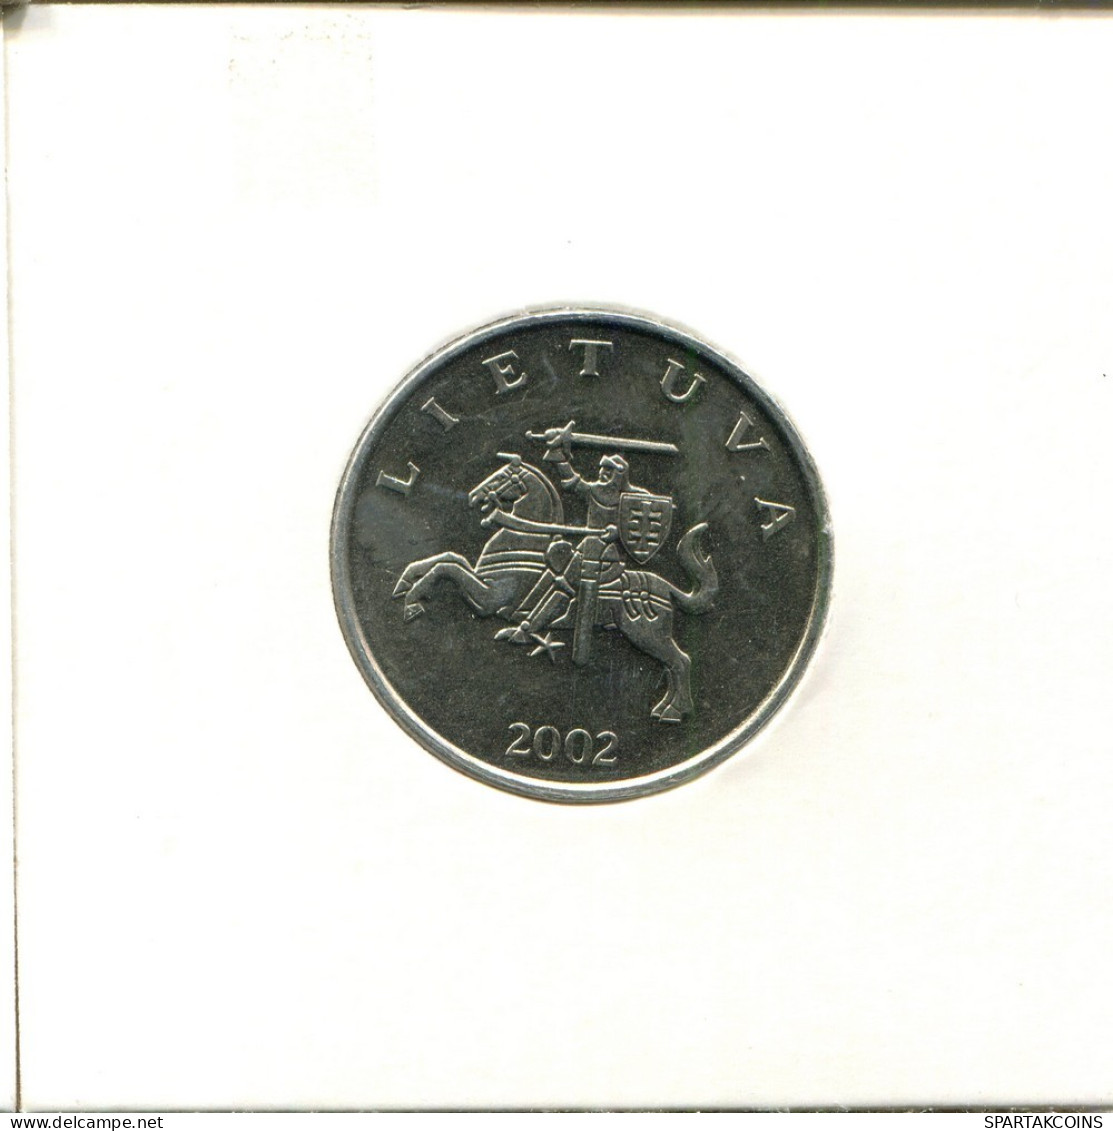 1 LITAS 2002 LITUANIA LITHUANIA Moneda #AS699.E.A - Lituanie